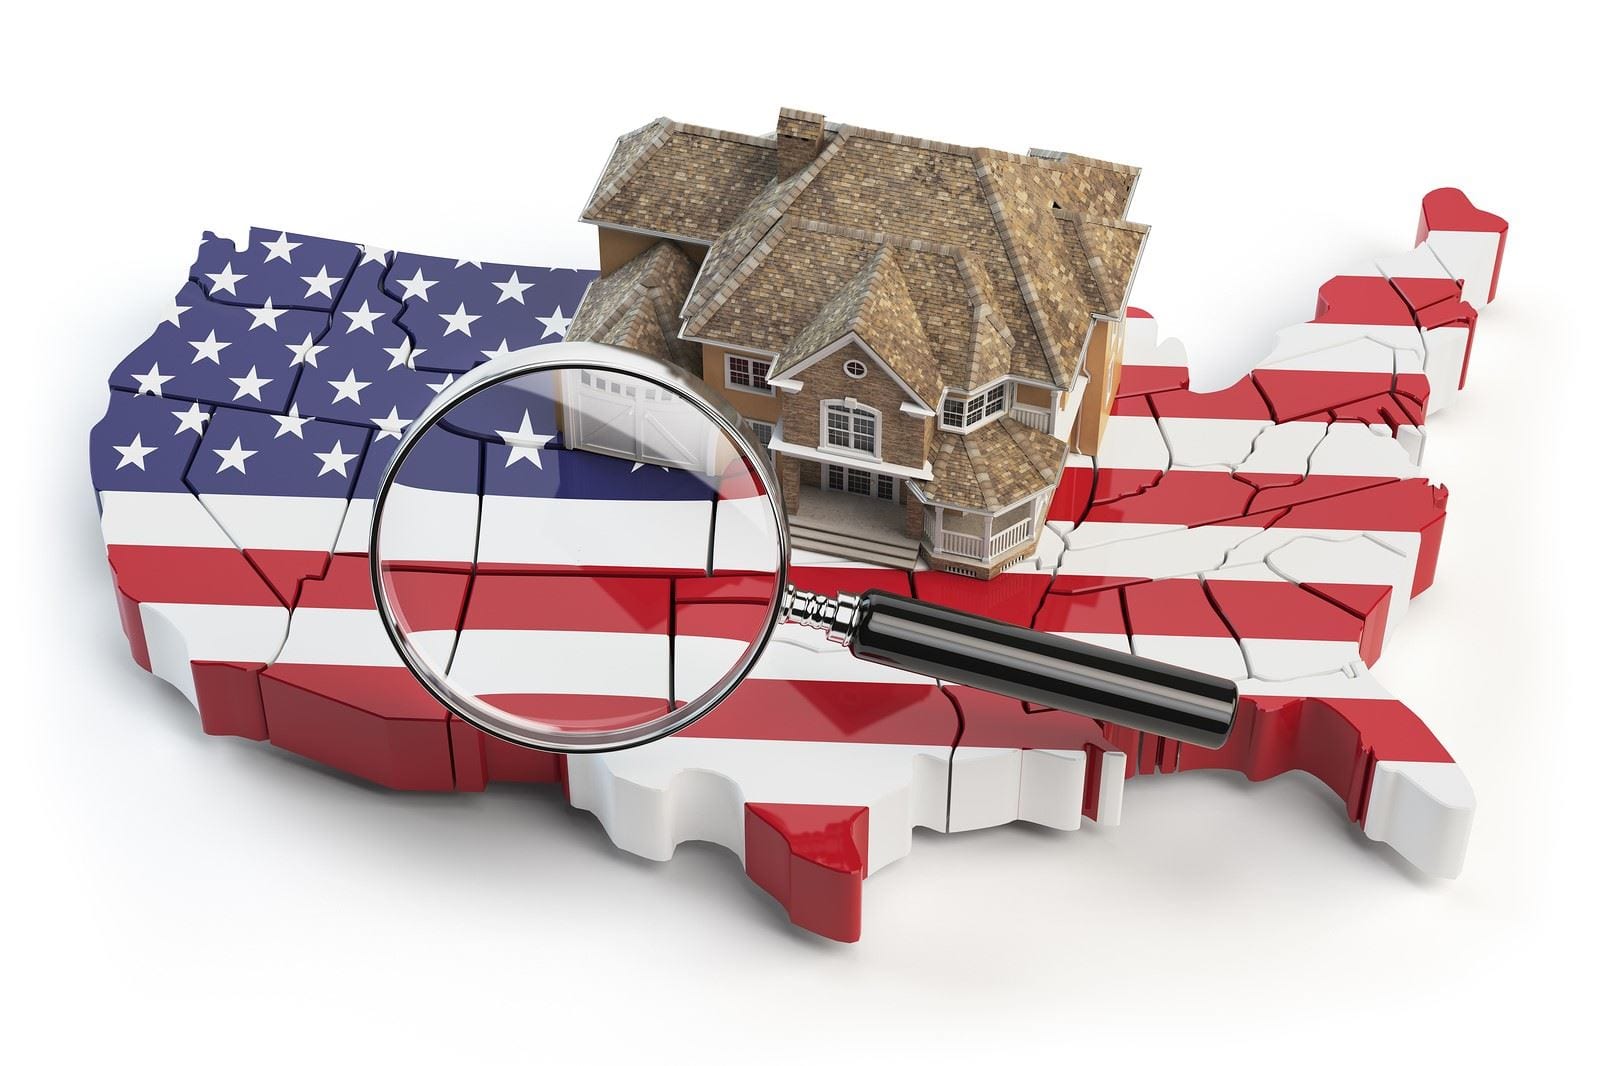 2020 Housing Market: Seller's or Buyer's Market? | Mashvisor